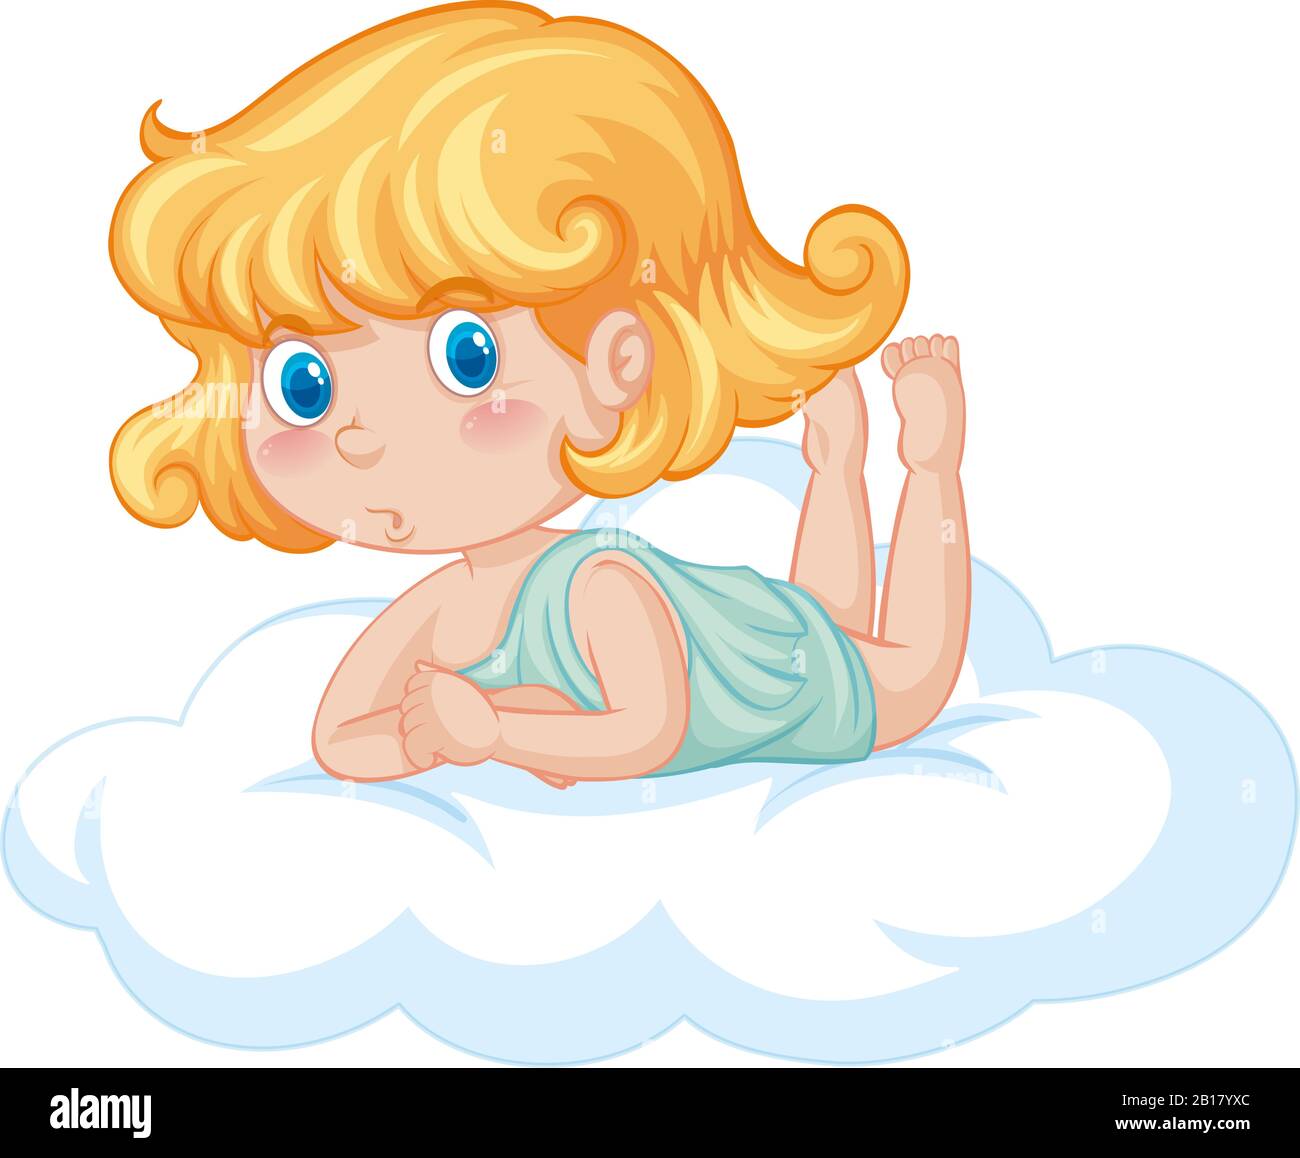 Joli ange sur l'illustration de nuage moelleux Illustration de Vecteur